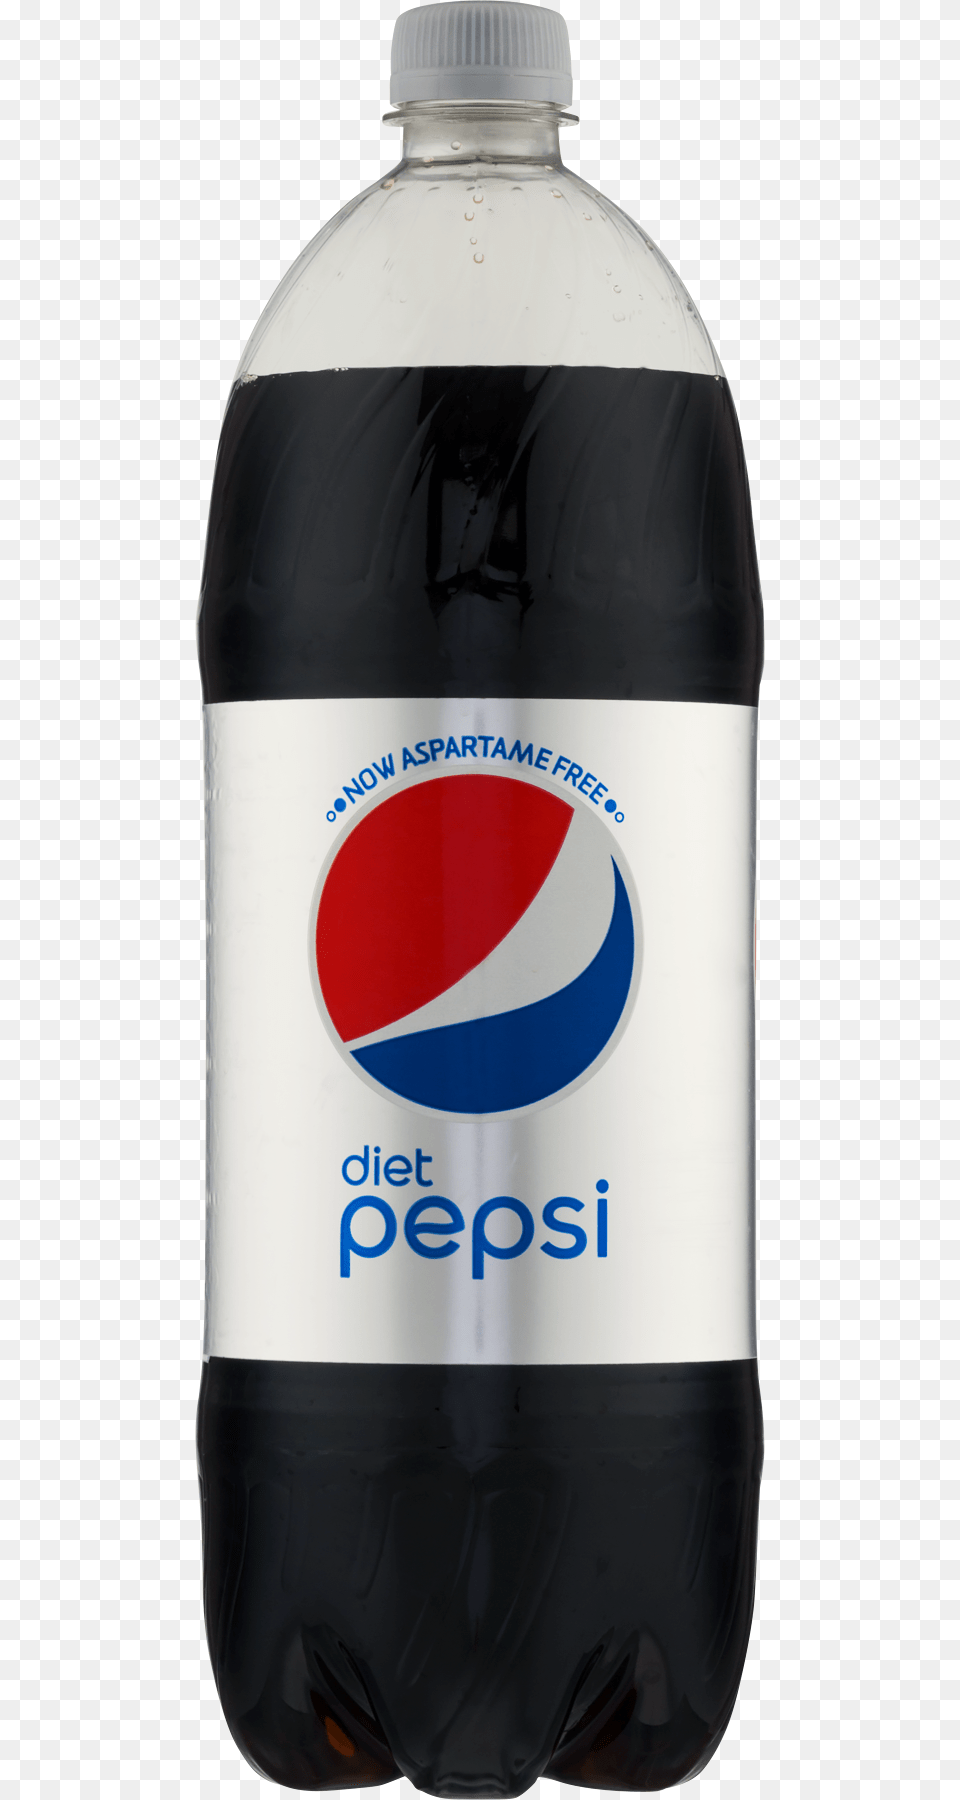 Transparent Pepsi Pepsi, Beverage, Bottle, Pop Bottle, Soda Png Image